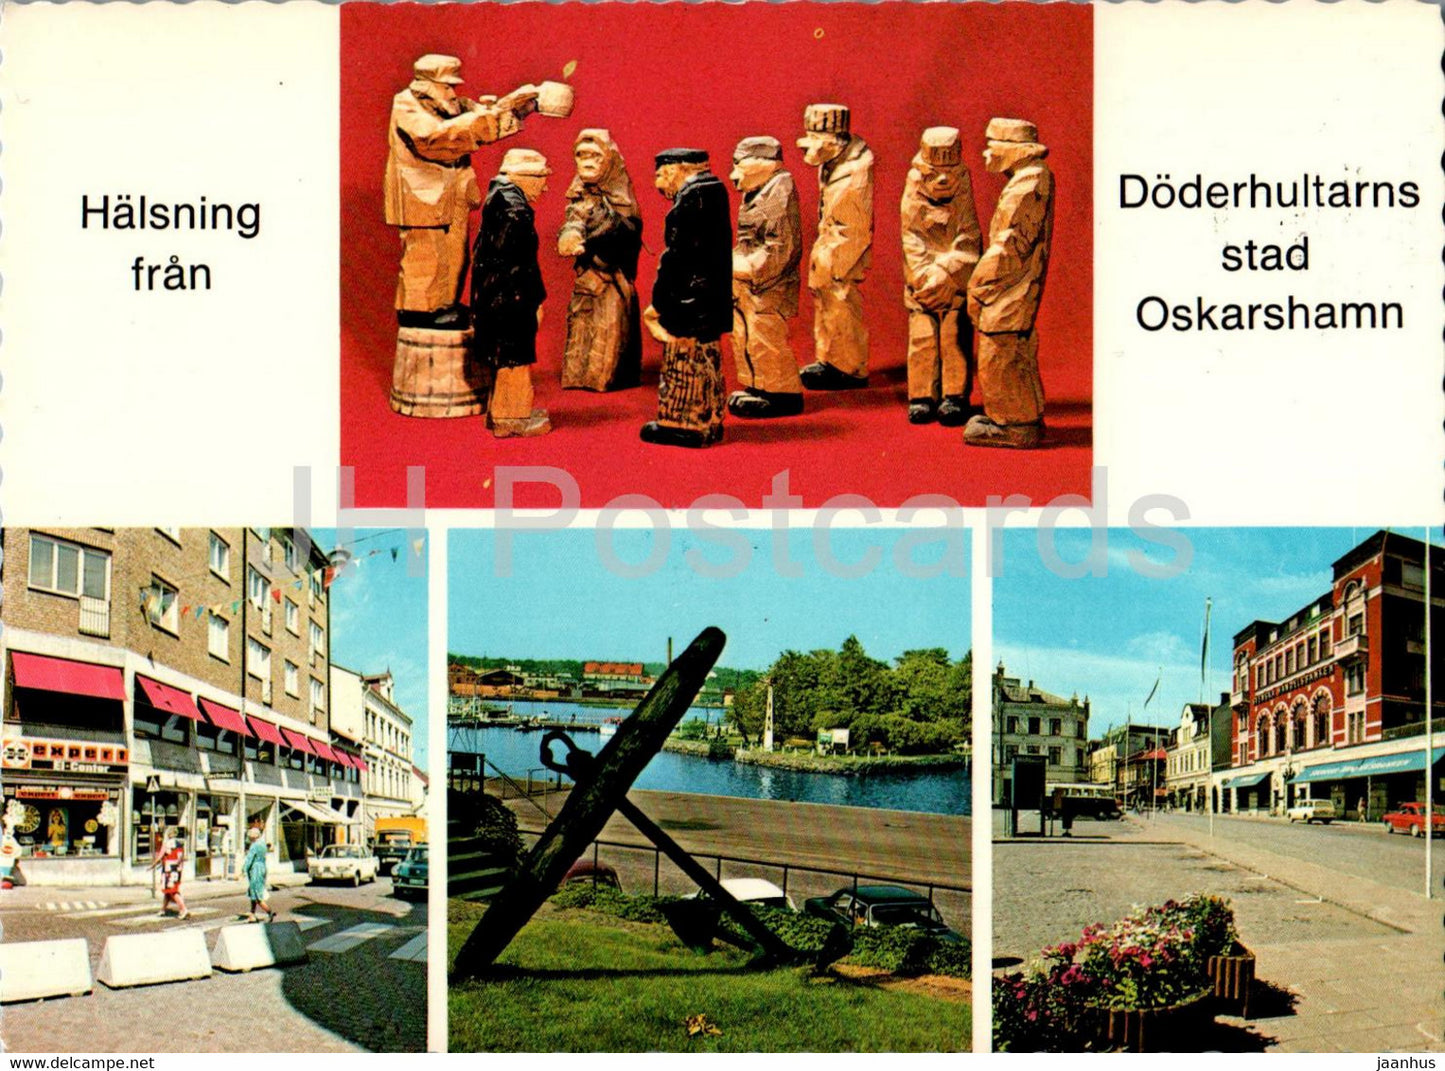 Oskarshamn - Auktionsgrupp av skulptoren - Axel R Petersson - 136 - Sweden - used - JH Postcards